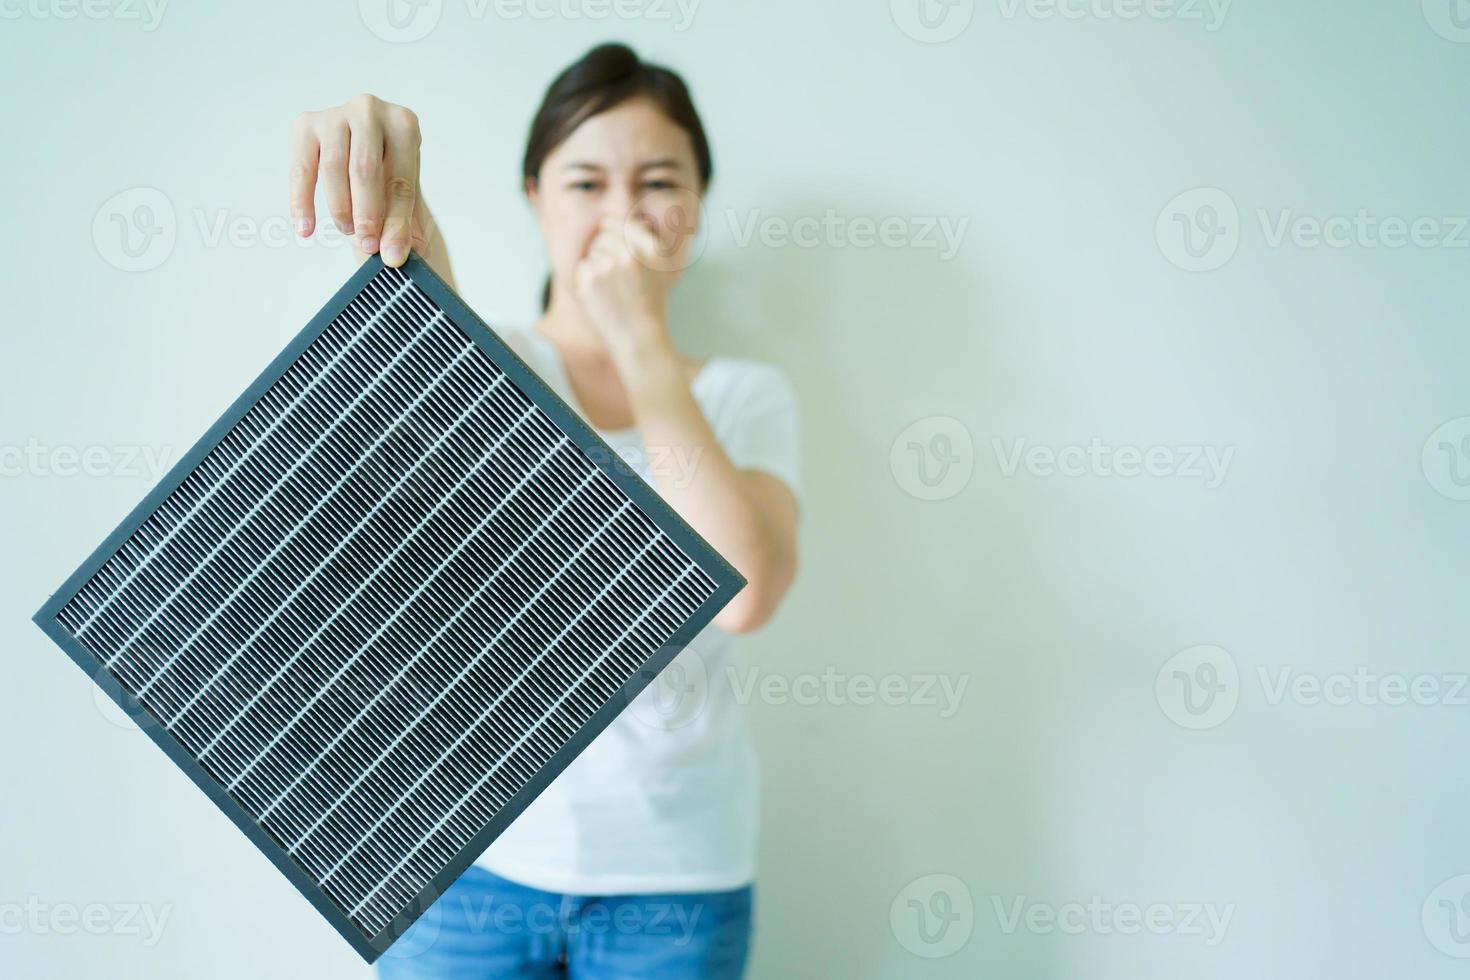 aziatische jonge vrouw die een gebruikte en de nieuwe luchtzuiveringsfilter toont, waarbij de gebruikte vuile en nieuwe luchtfilter wordt vergeleken. foto